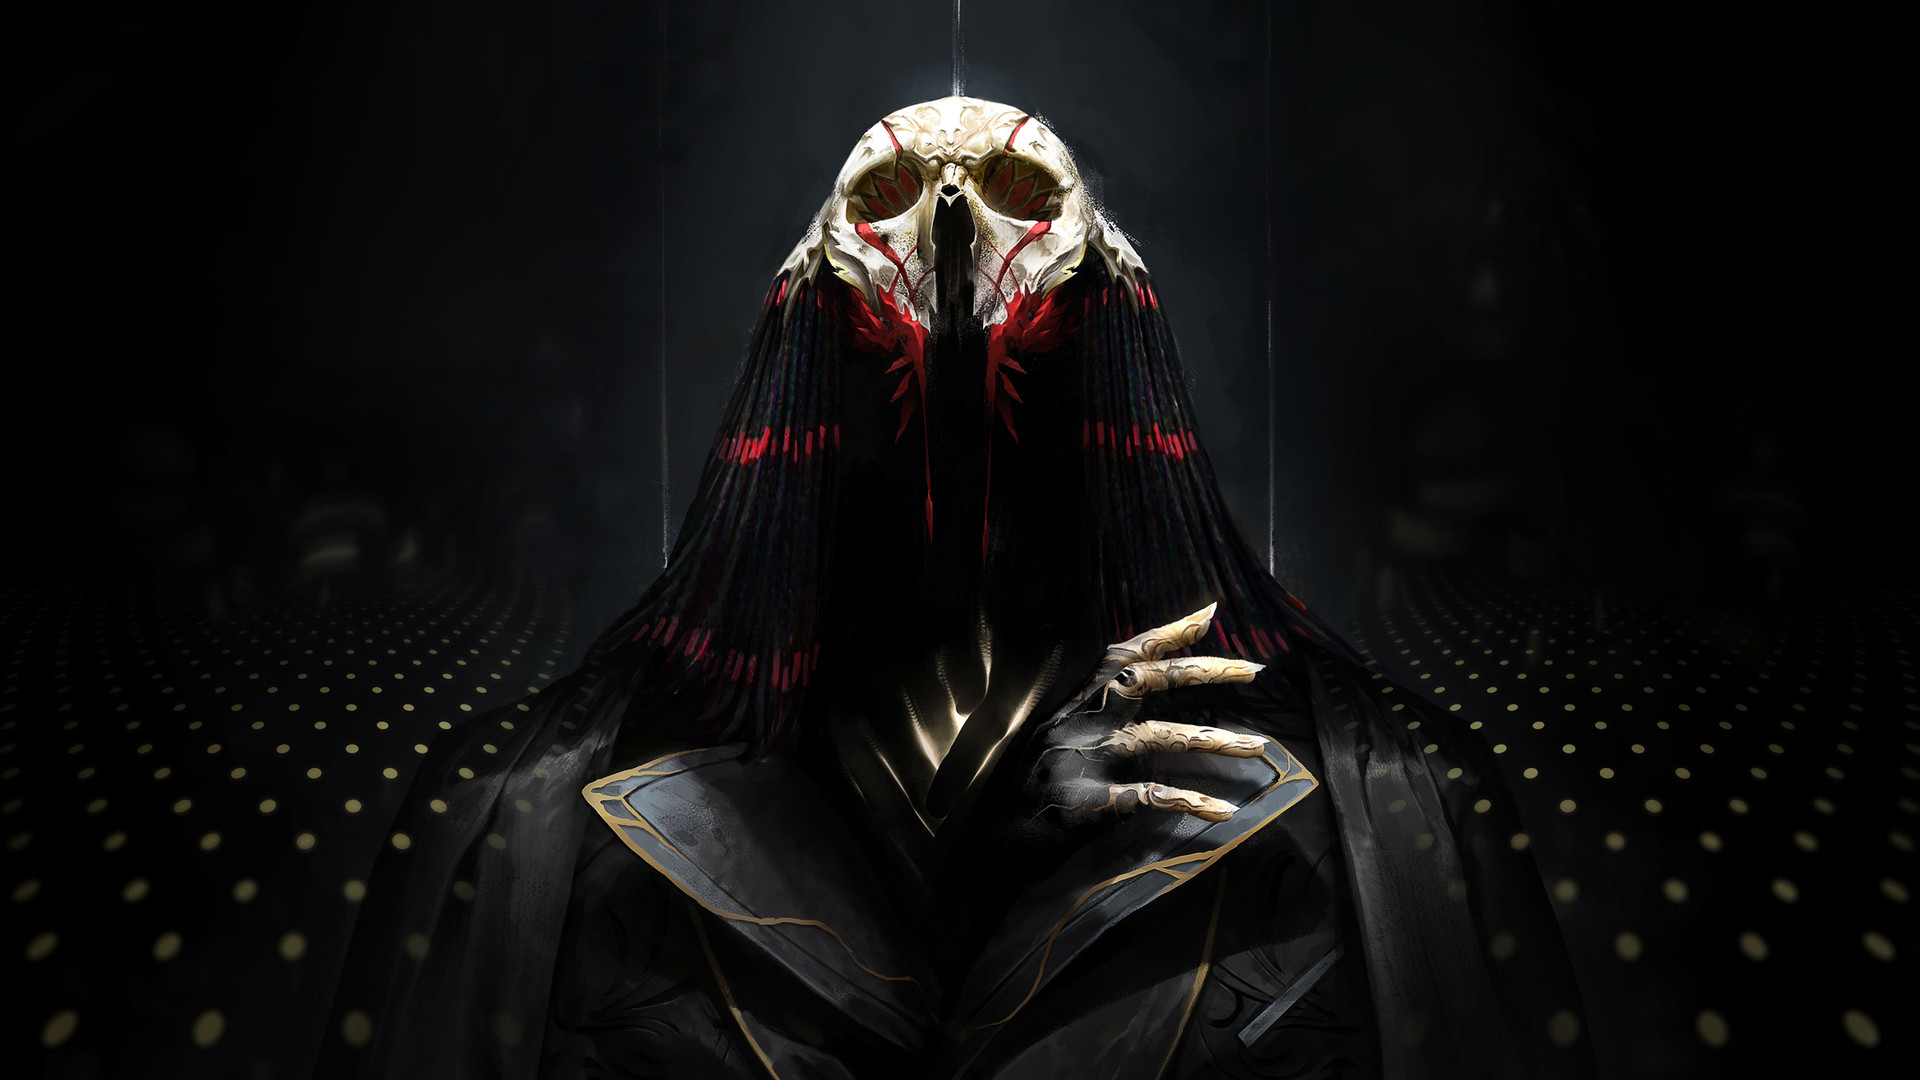 Free download wallpaper Dark, Creature, Skull on your PC desktop